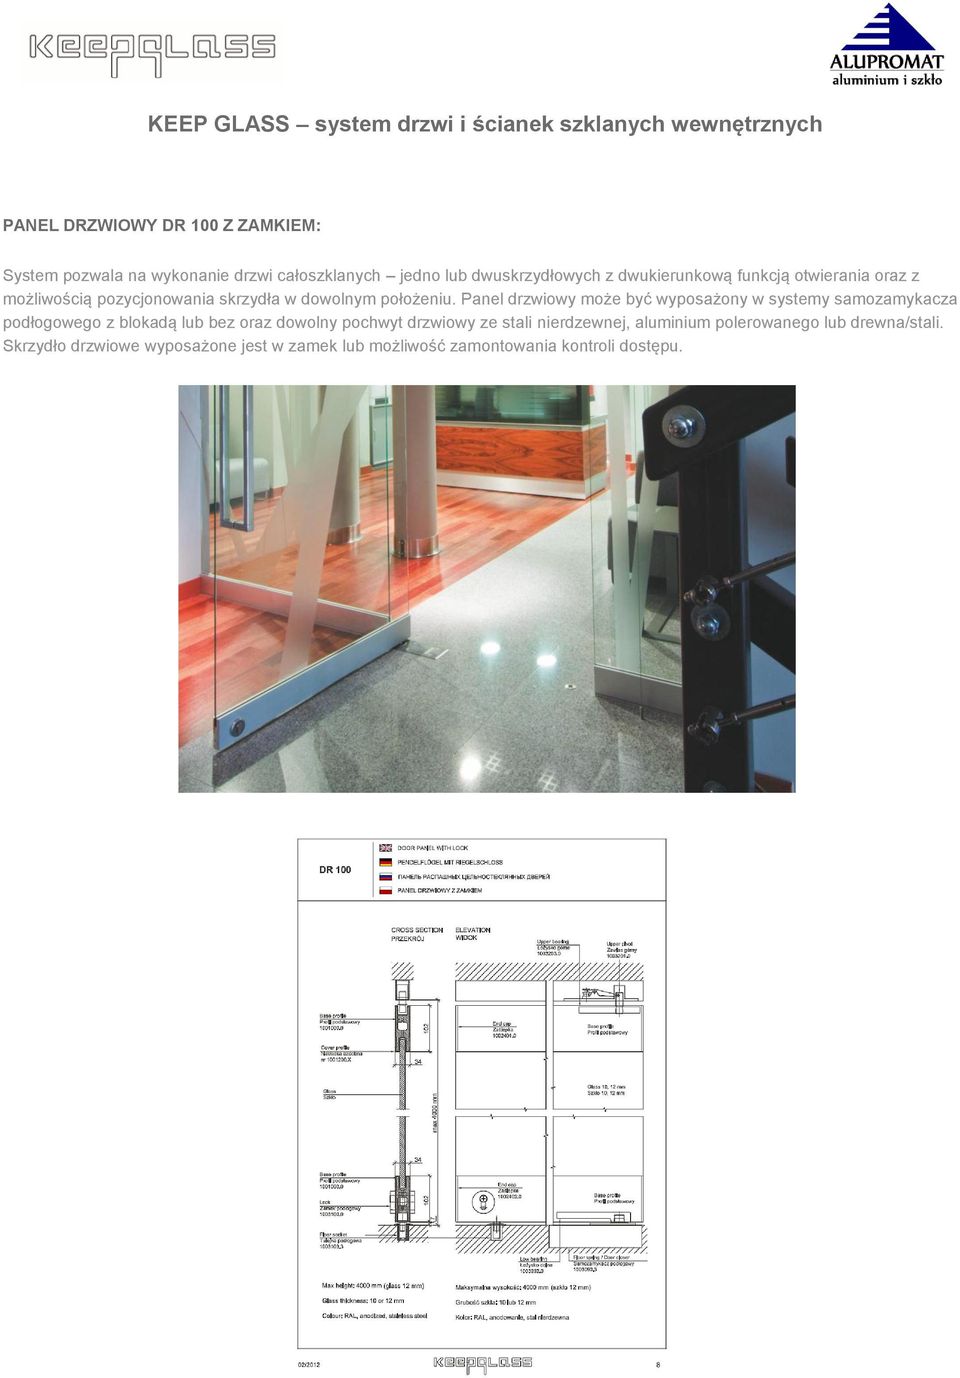 Panel drzwiowy może być wyposażony w systemy samozamykacza podłogowego z blokadą lub bez oraz dowolny pochwyt drzwiowy